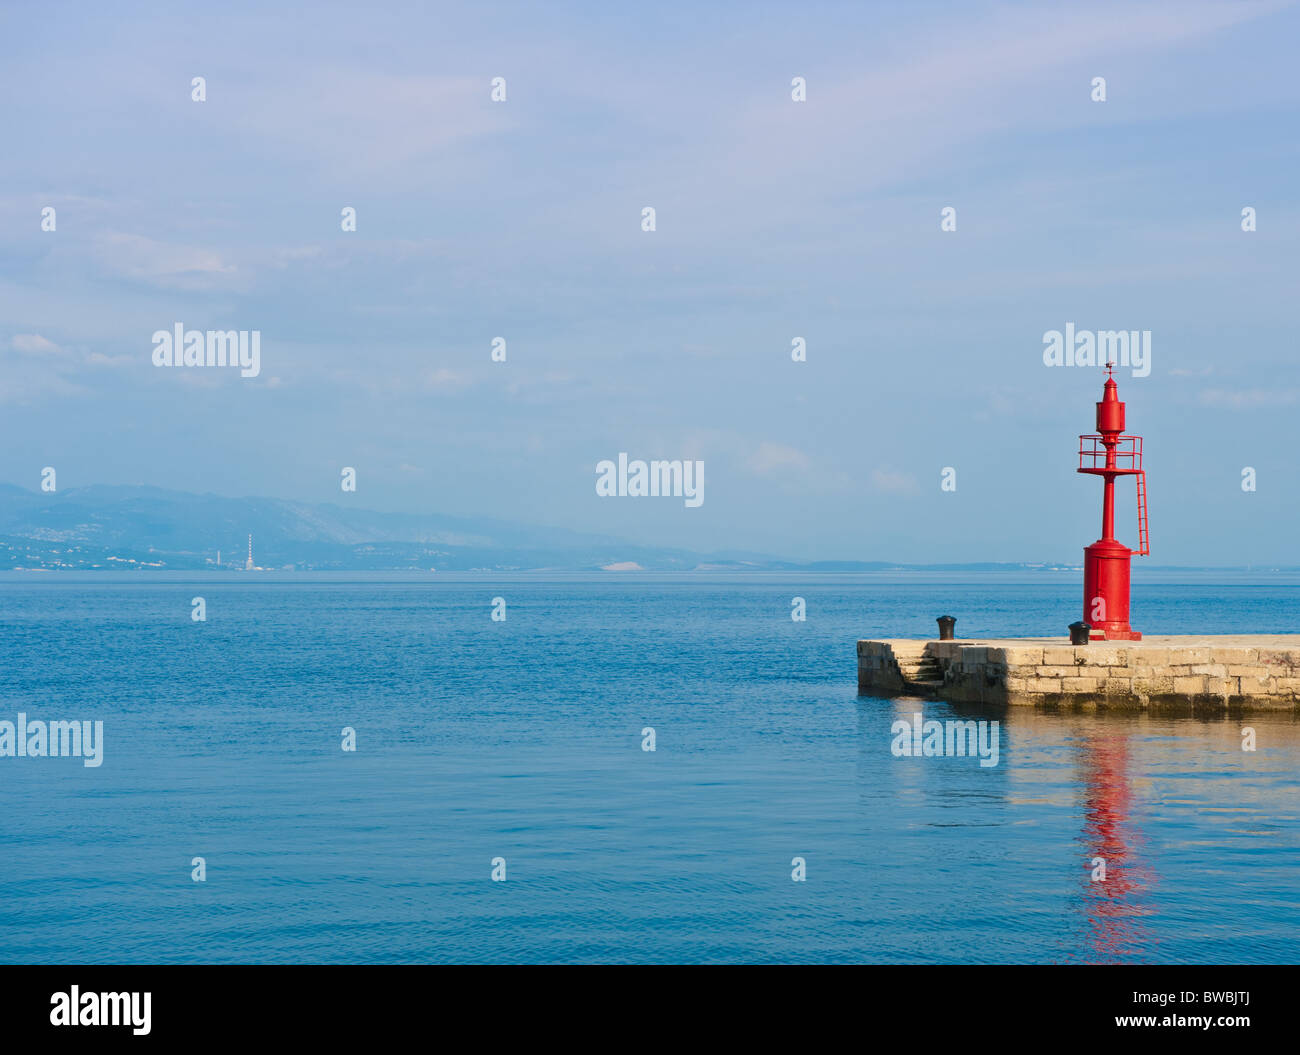 Pier im Adriatischen Meer. Blick vom Kai von Opatija, eine touristische Stadt an der kroatischen Küste. Beliebtes touristisches Ausflugsziel. Stockfoto